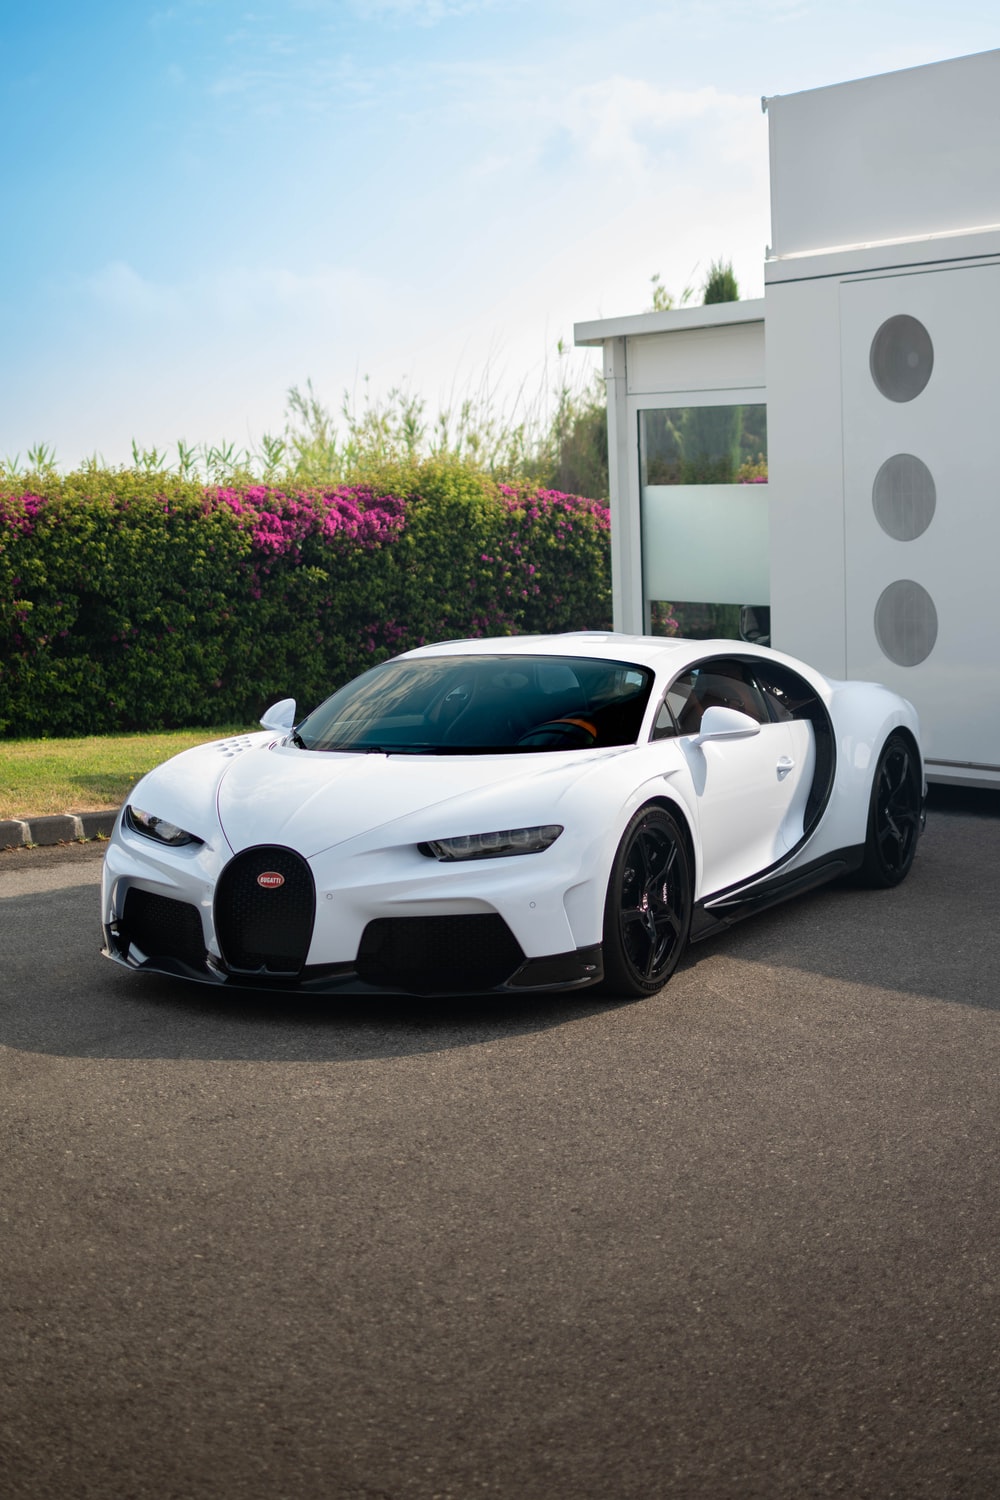 Bugatti Wallpaper: Free HD Download [HQ]